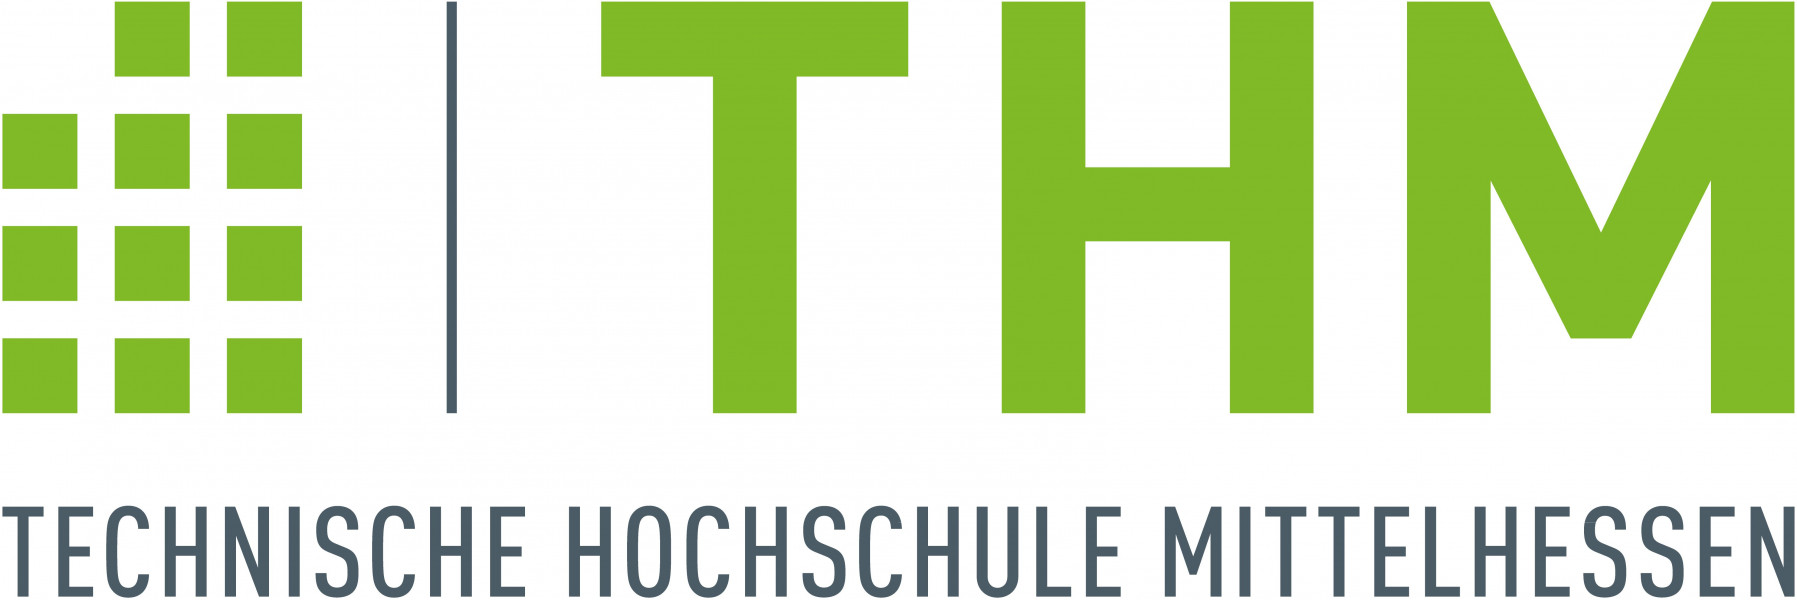 Technische Hochschule Mittelhessen - Kompetenzzentrum LOTuS  - Optikzentrum Wetzlar